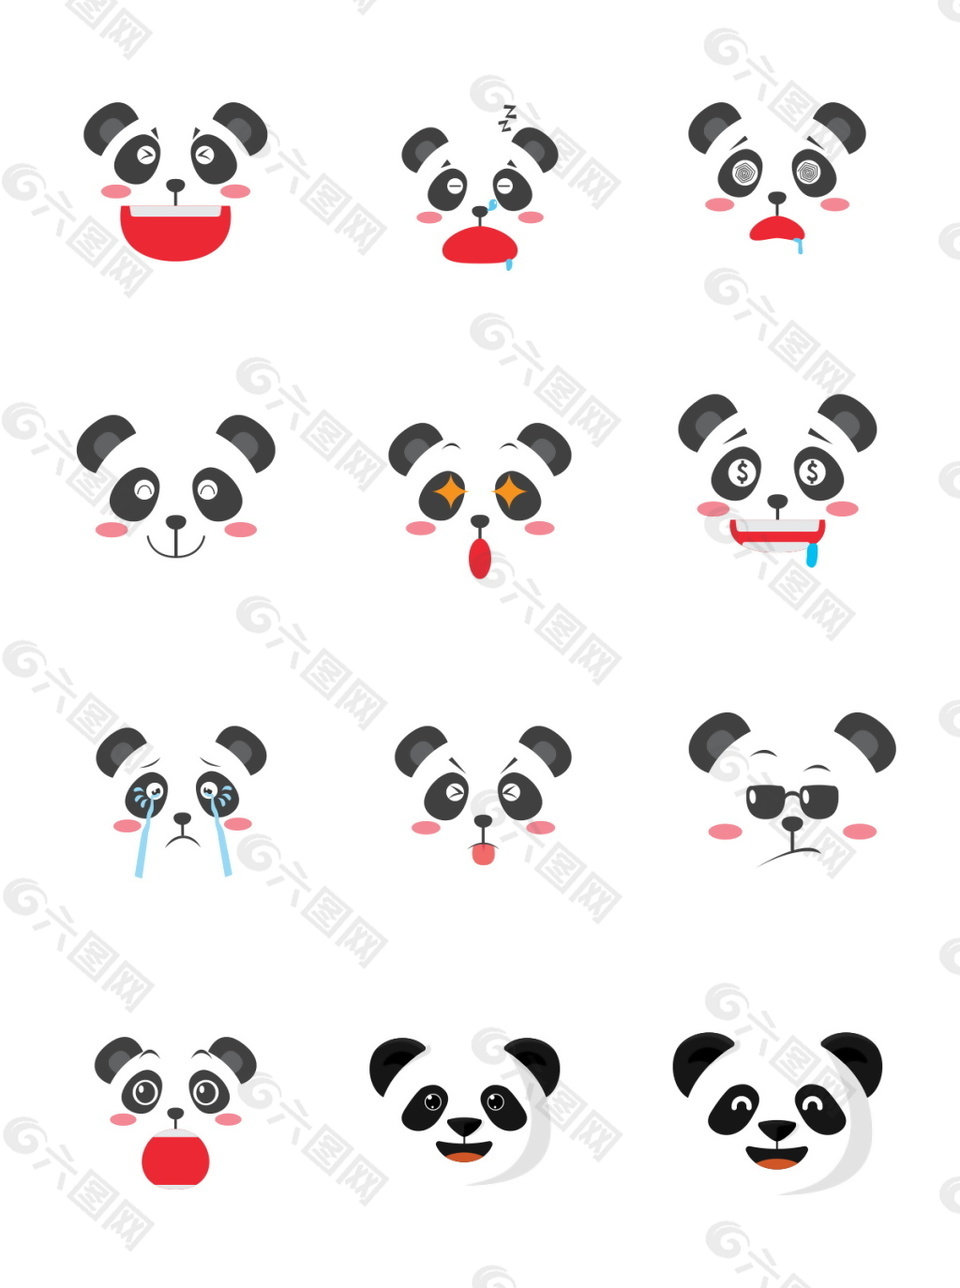 卡通熊猫装饰元素表情包图案集合